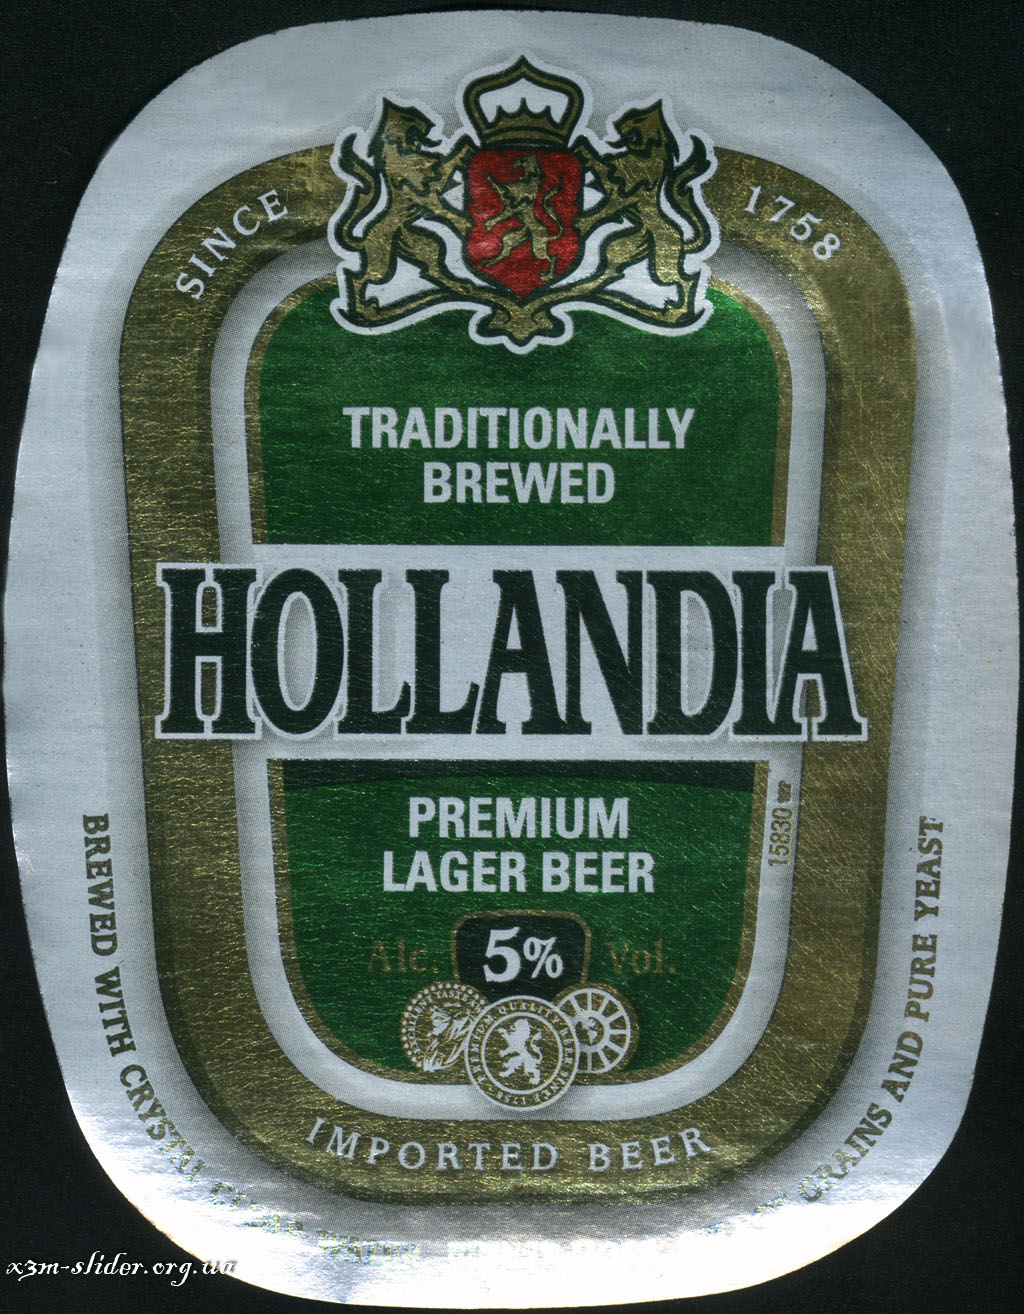 Hollandia - Premium Lager Beer